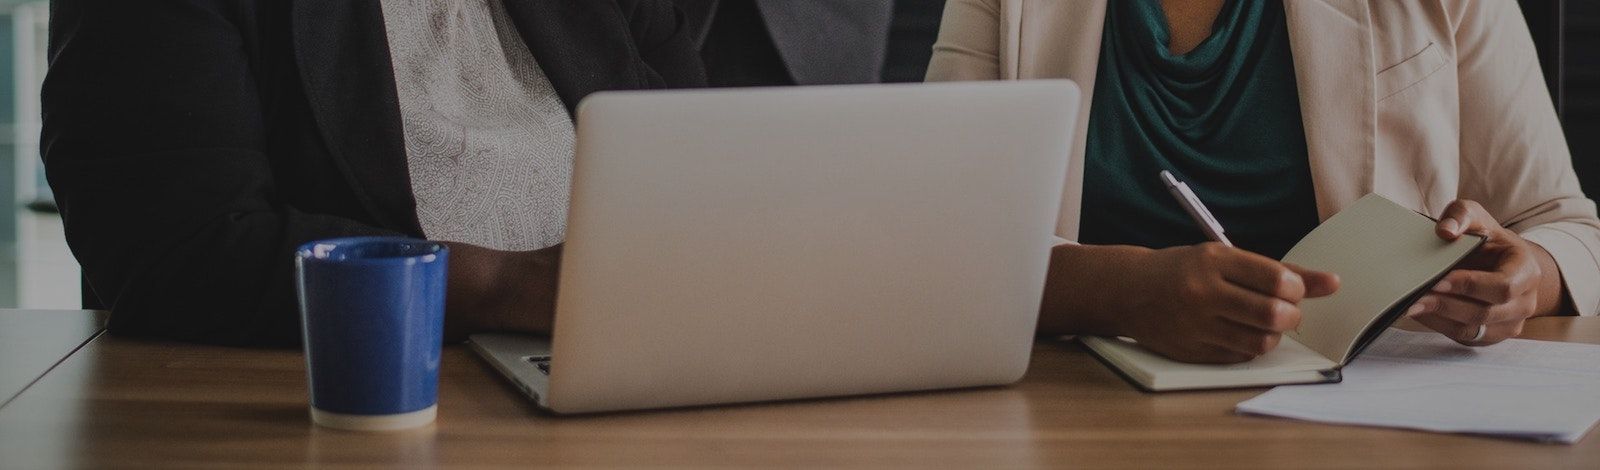 Foto de dos mujeres de negocios sentadas hombro a hombro en una mesa, detrás de un laptop plateado. La mujer a la izquierda lleva una camisa blanca bajo una chaqueta negra. La mujer a la derecha lleva una camisa verde azulado bajo una chaqueta crema y est